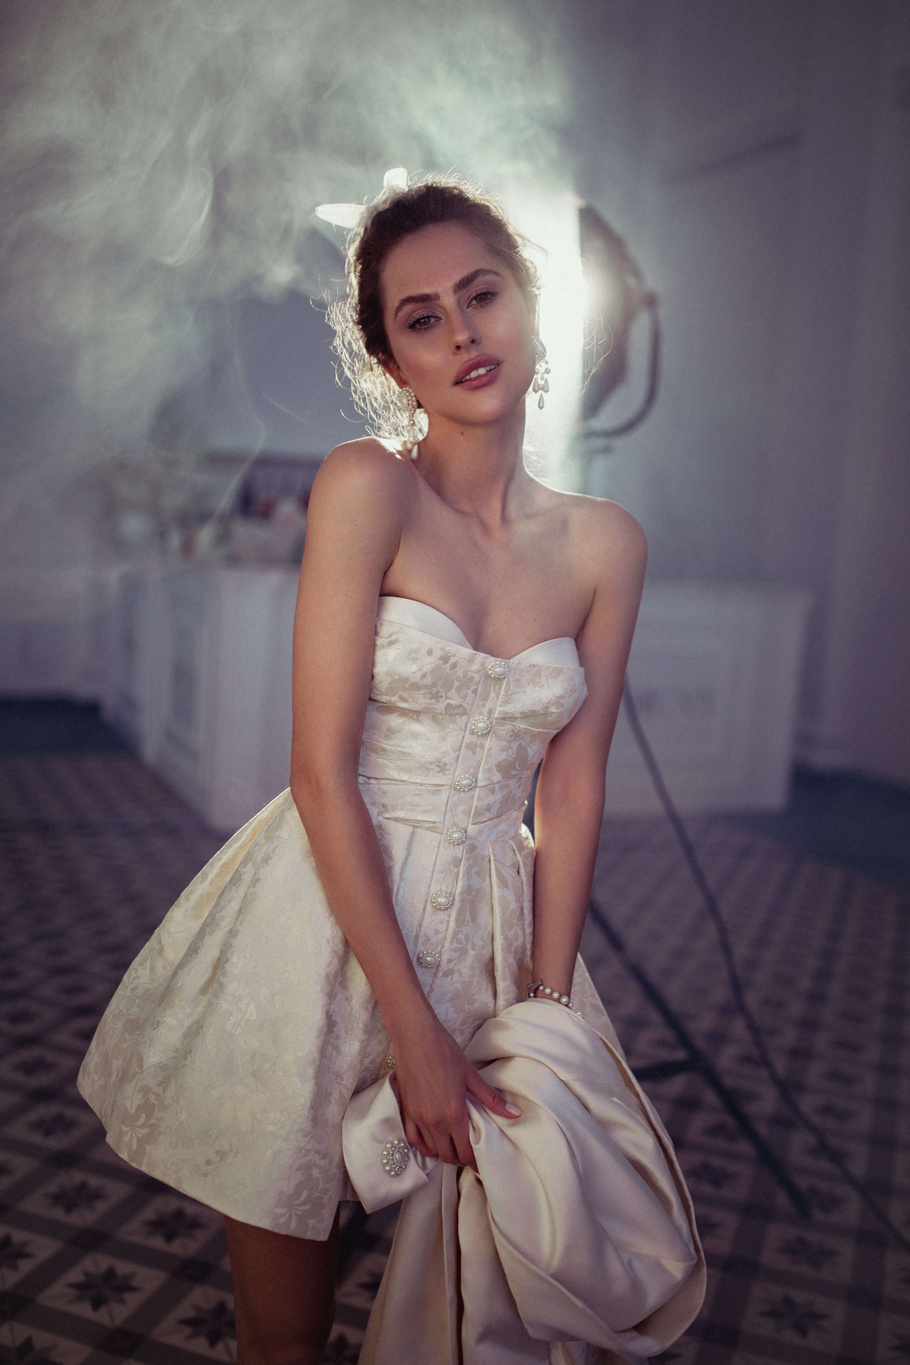 Купить свадебное платье «Чезара» Бламмо Биамо из коллекции Свит Лайф 2021 года в Санкт-Петербурге